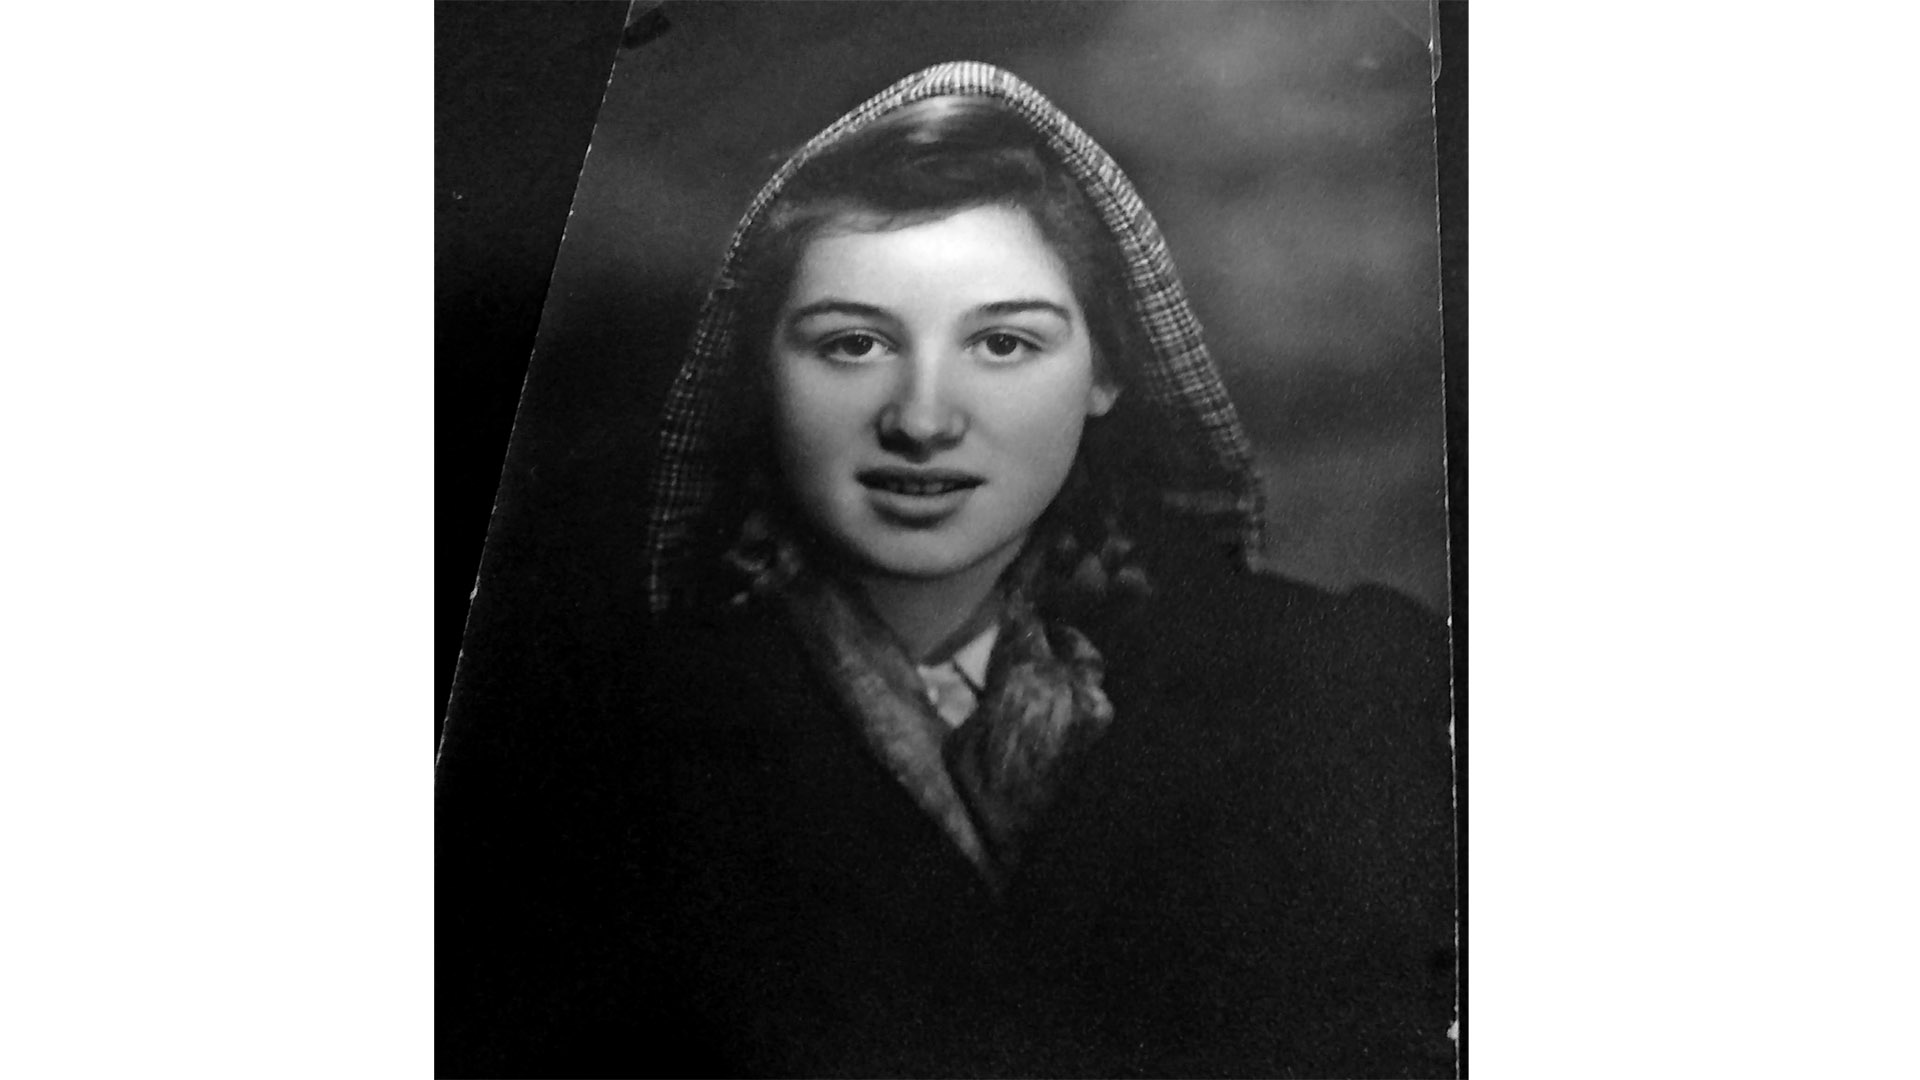 Ruth als 15-Jährige kurz nach Ende des Zweiten Weltkrieges